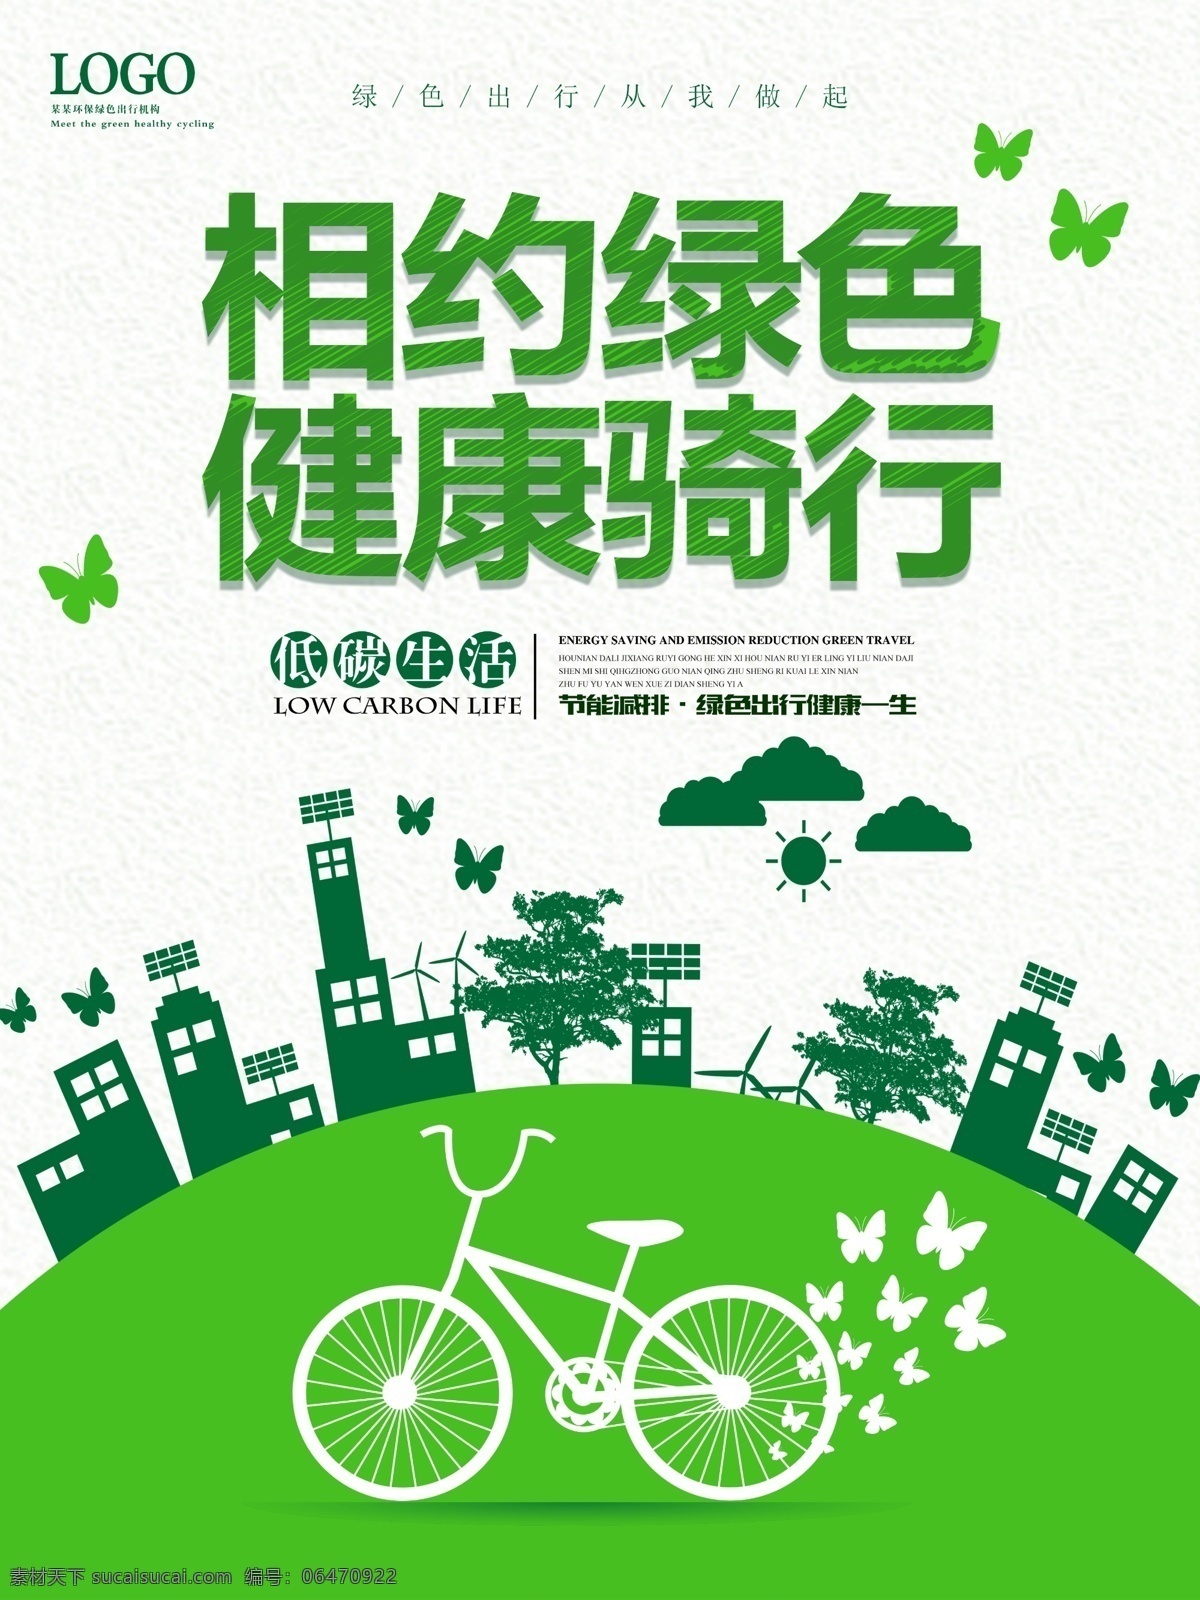 相约 绿色 健康 骑 行 公益 海报 清新 简约 骑行 环保 绿色出行 自行车 低碳 节能减排 节能 环保节能 节能环保 绿色环保 保护环境 爱护地球 公交站牌